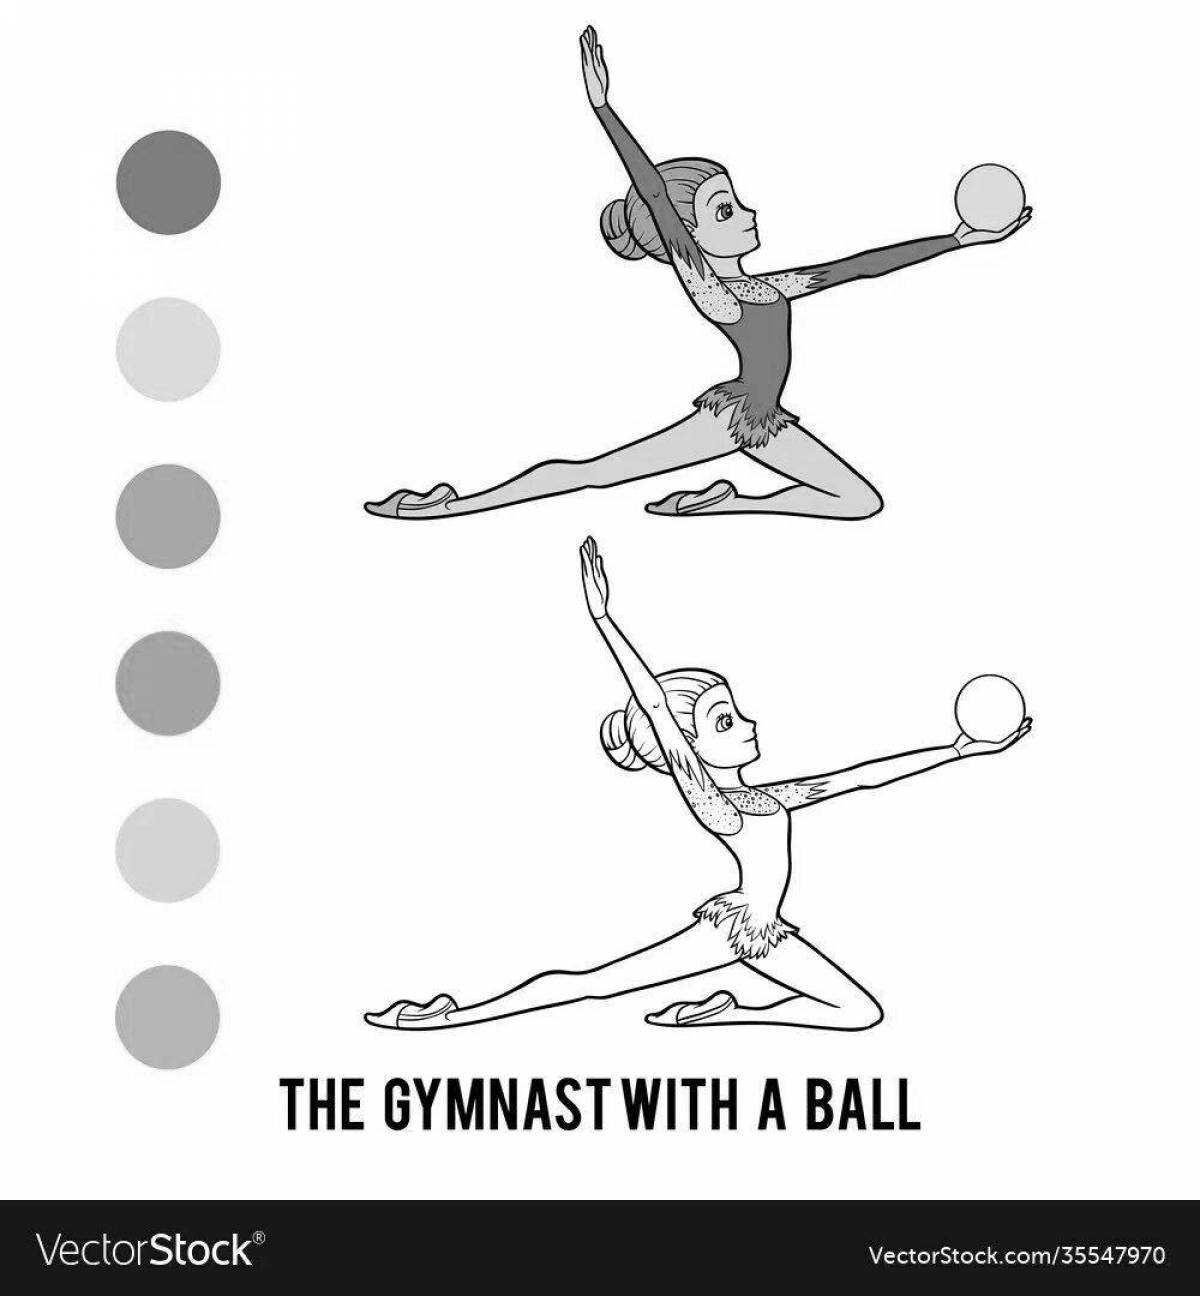 Tenacious gymnast with ball